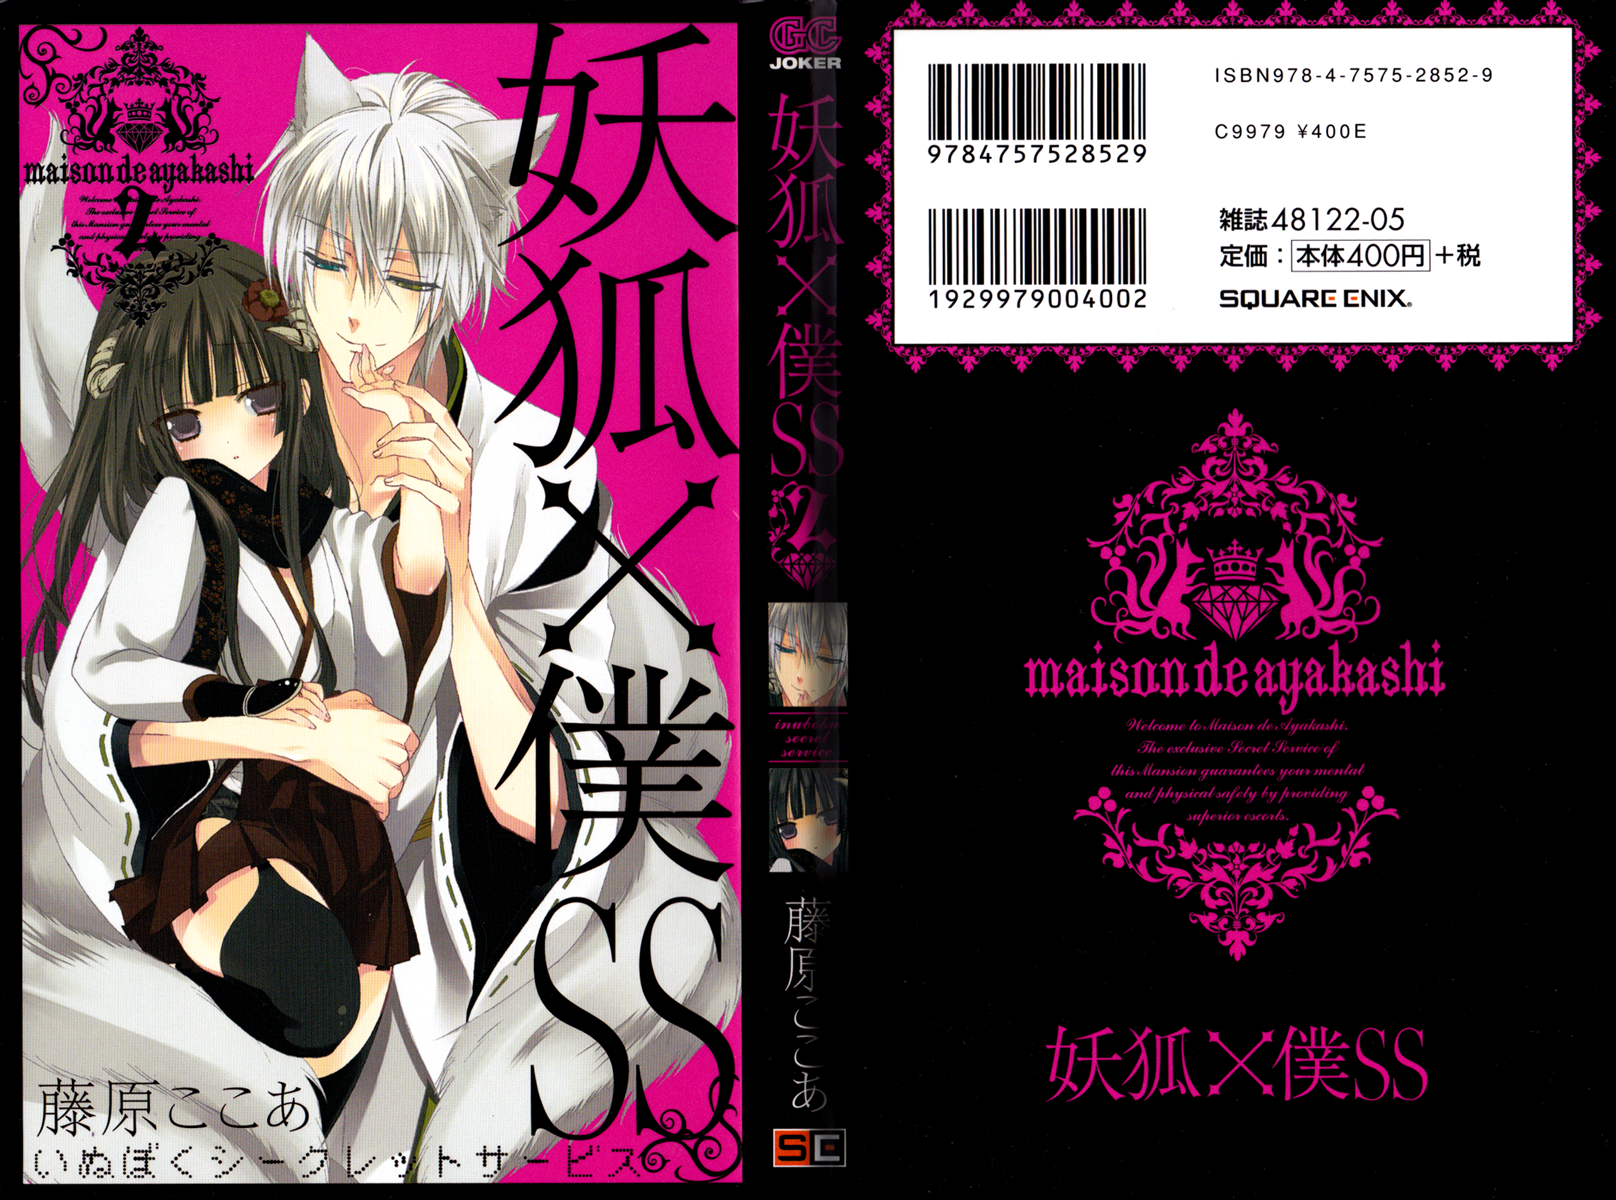 Manga cover - Inu x Boku SS Photo (25337295) - Fanpop